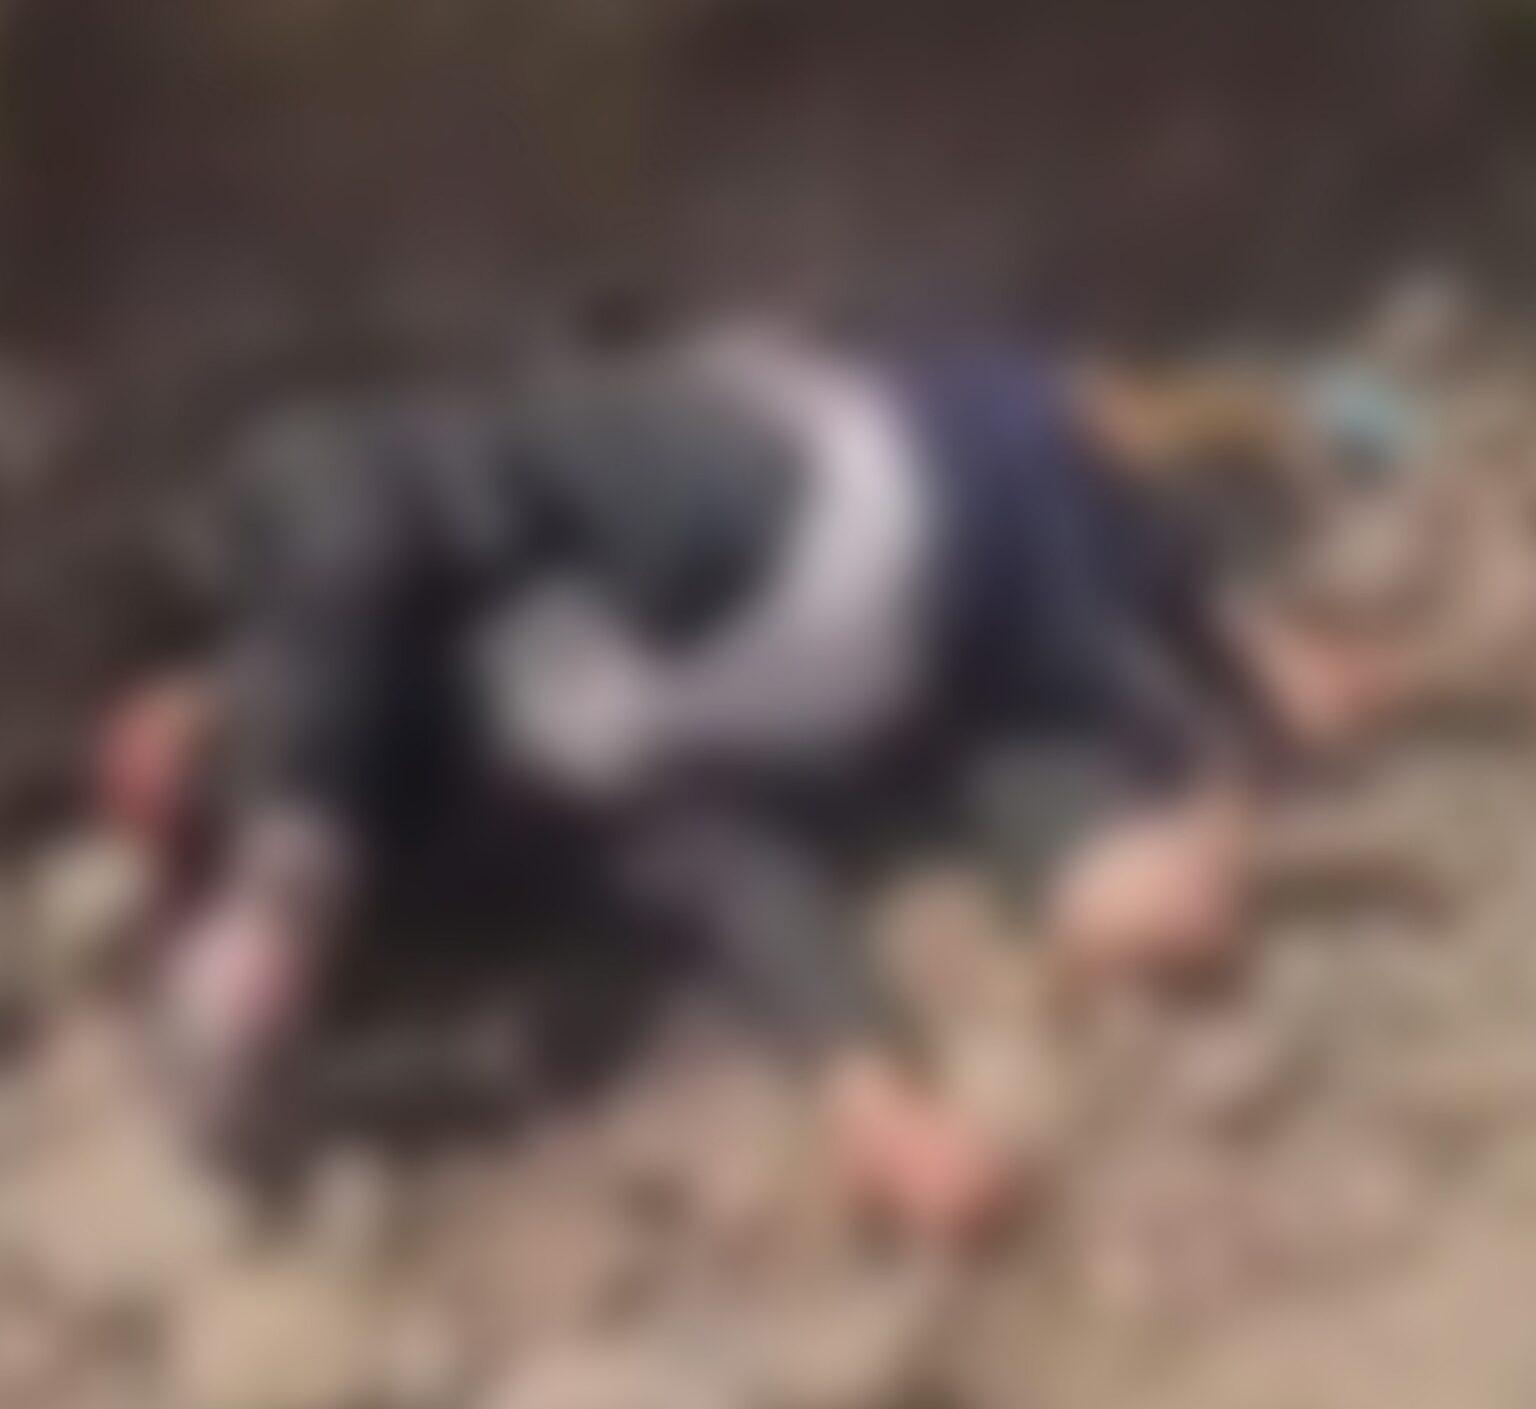 مشرفيين حوثيين يقتلون مواطن ويصبون مادة الاسيت الخام على جسدة في ذمار